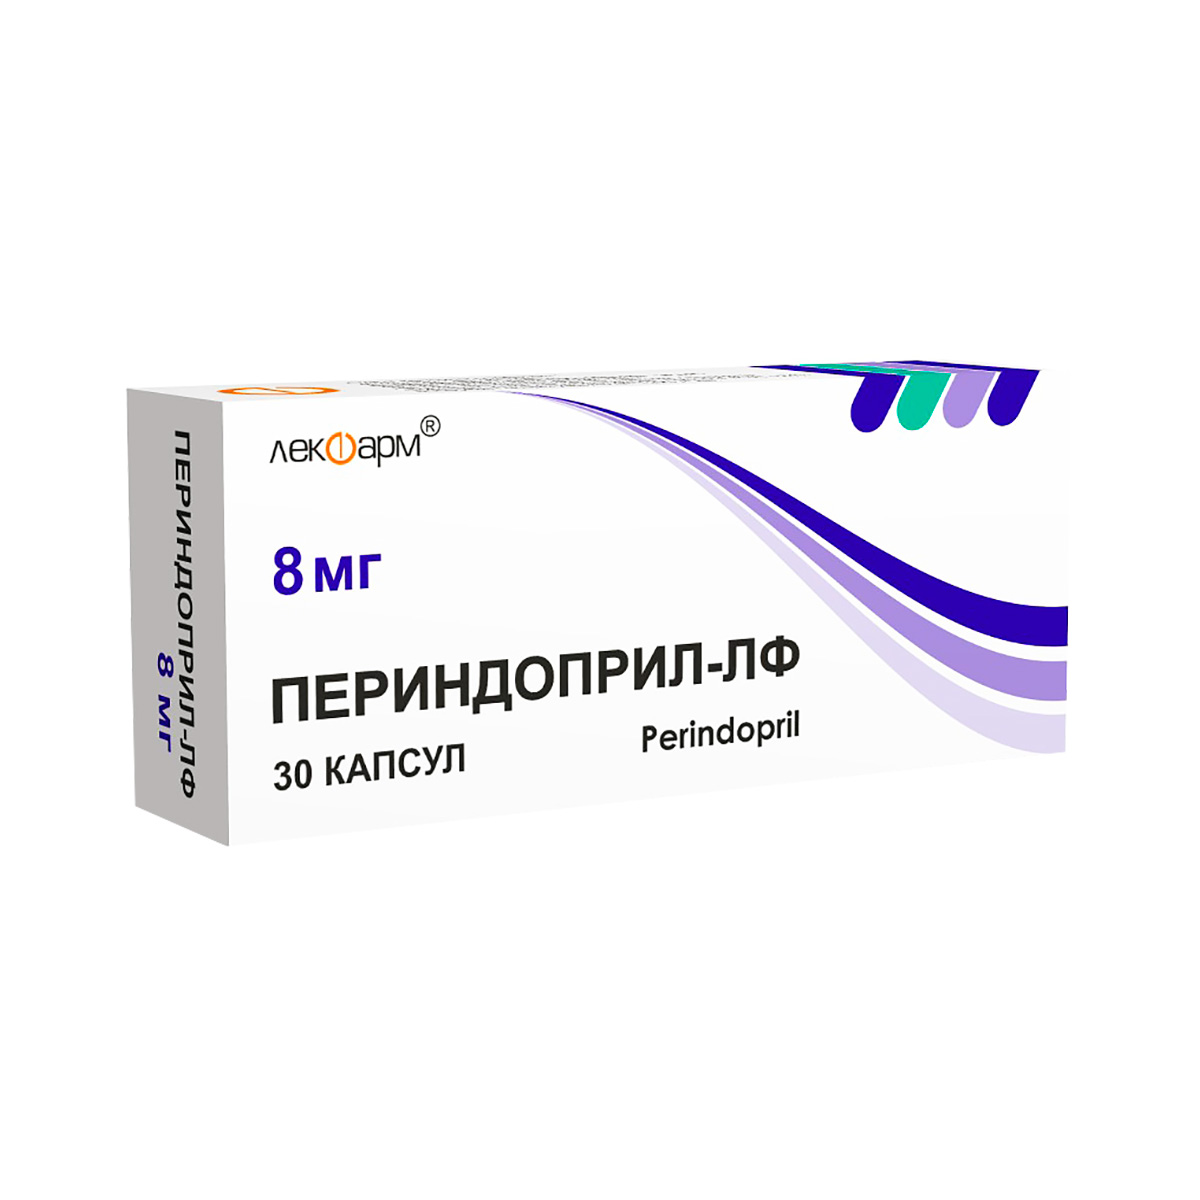 Периндоприл-ЛФ 8 мг капсулы 30 шт